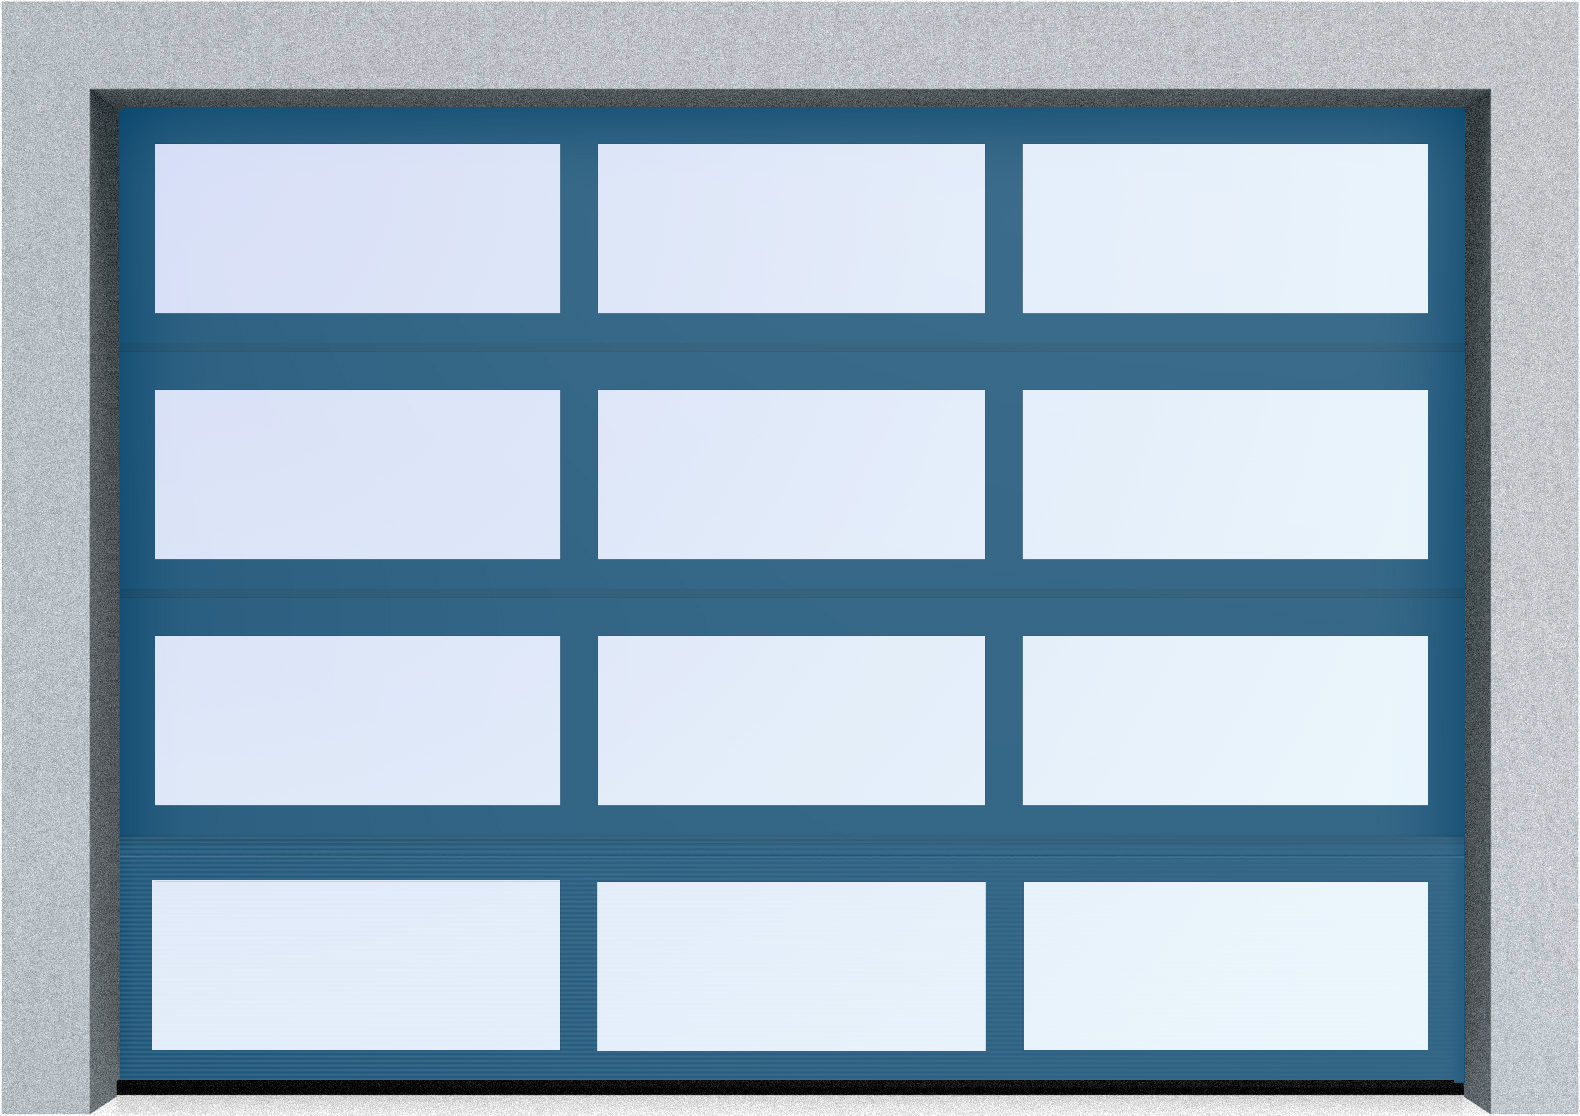  Автоматические секционные панорамные ворота серии AluTrend (АЛП) 6250х4500 стандартные цвета, фото 3 